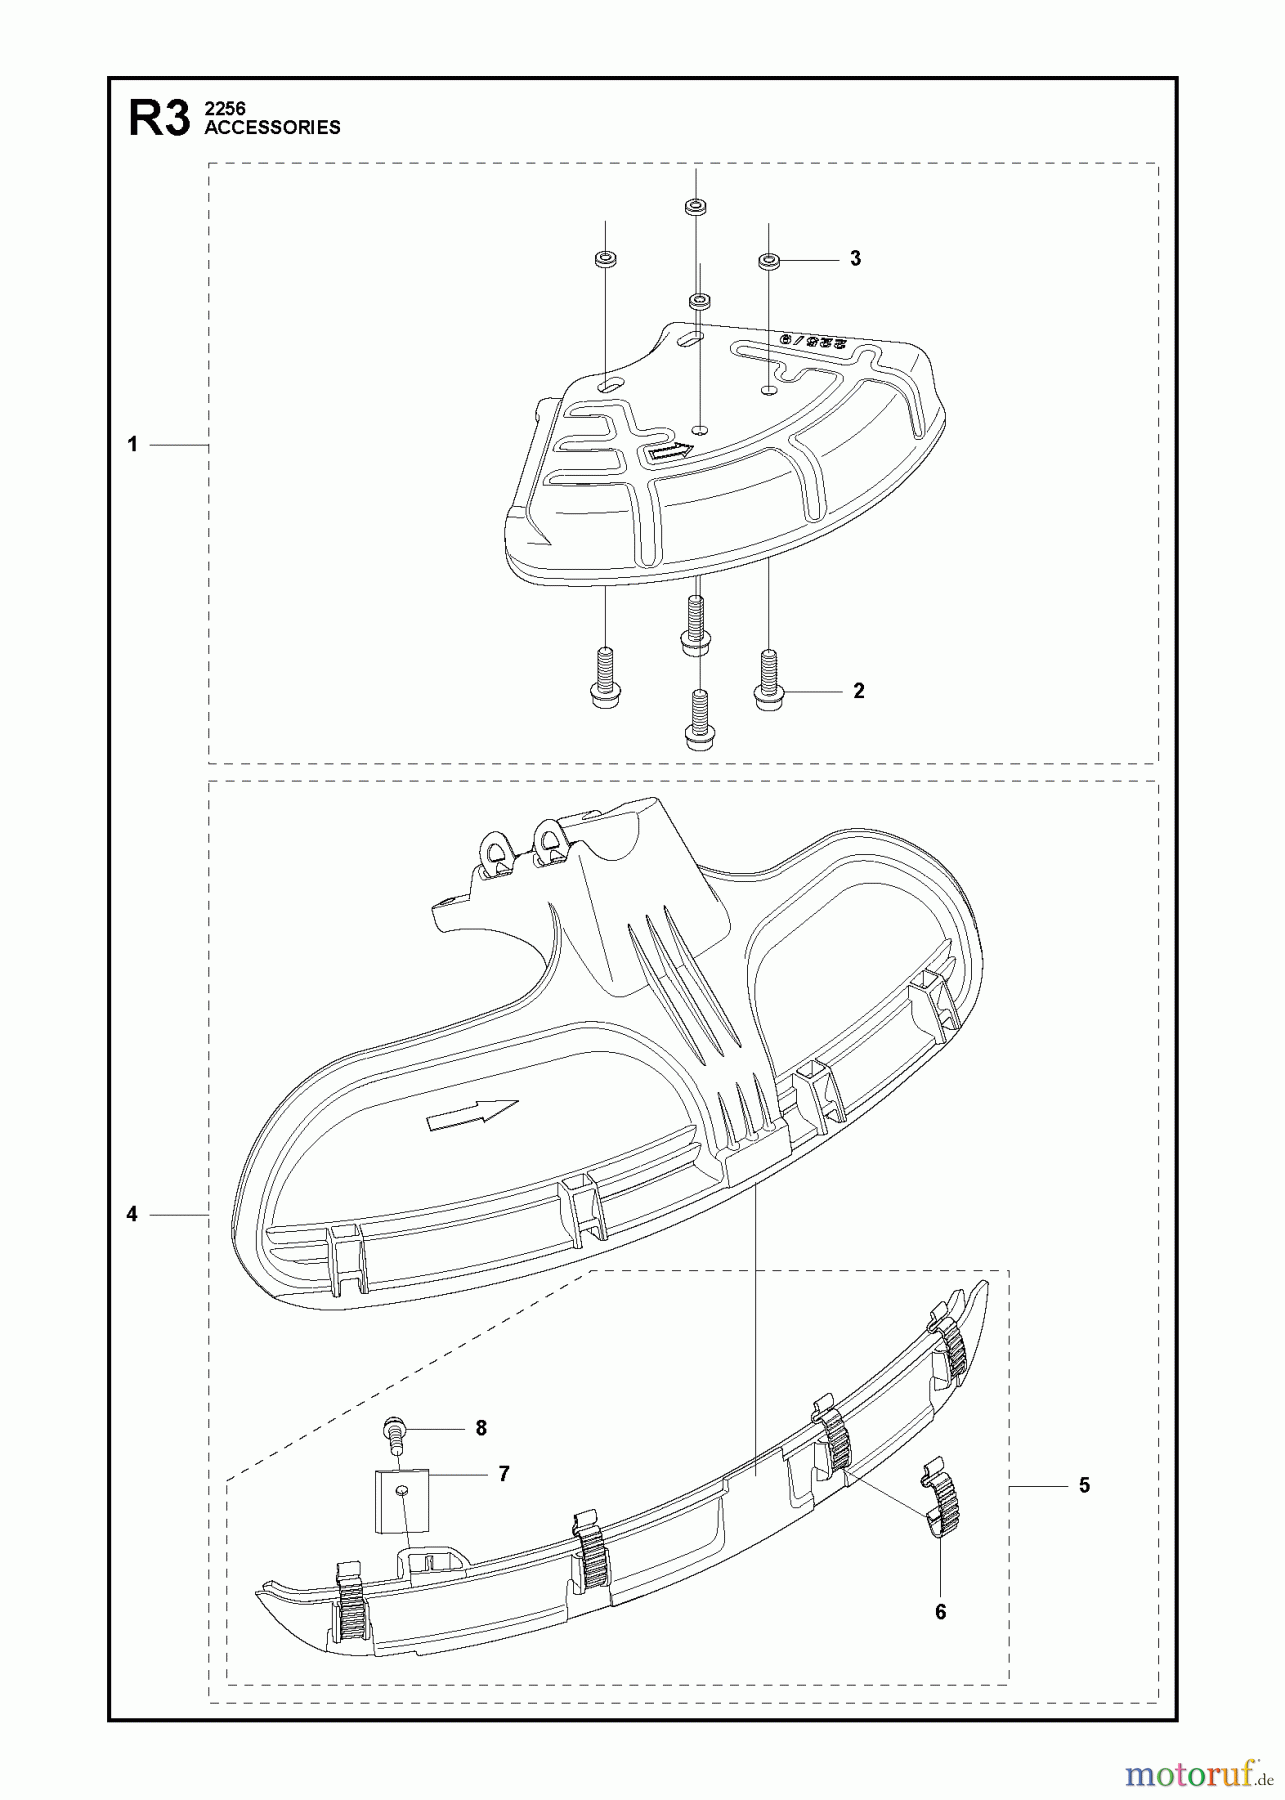  Jonsered Motorsensen, Trimmer BC2256 - Jonsered Brushcutter (2011-01) ACCESSORIES #4